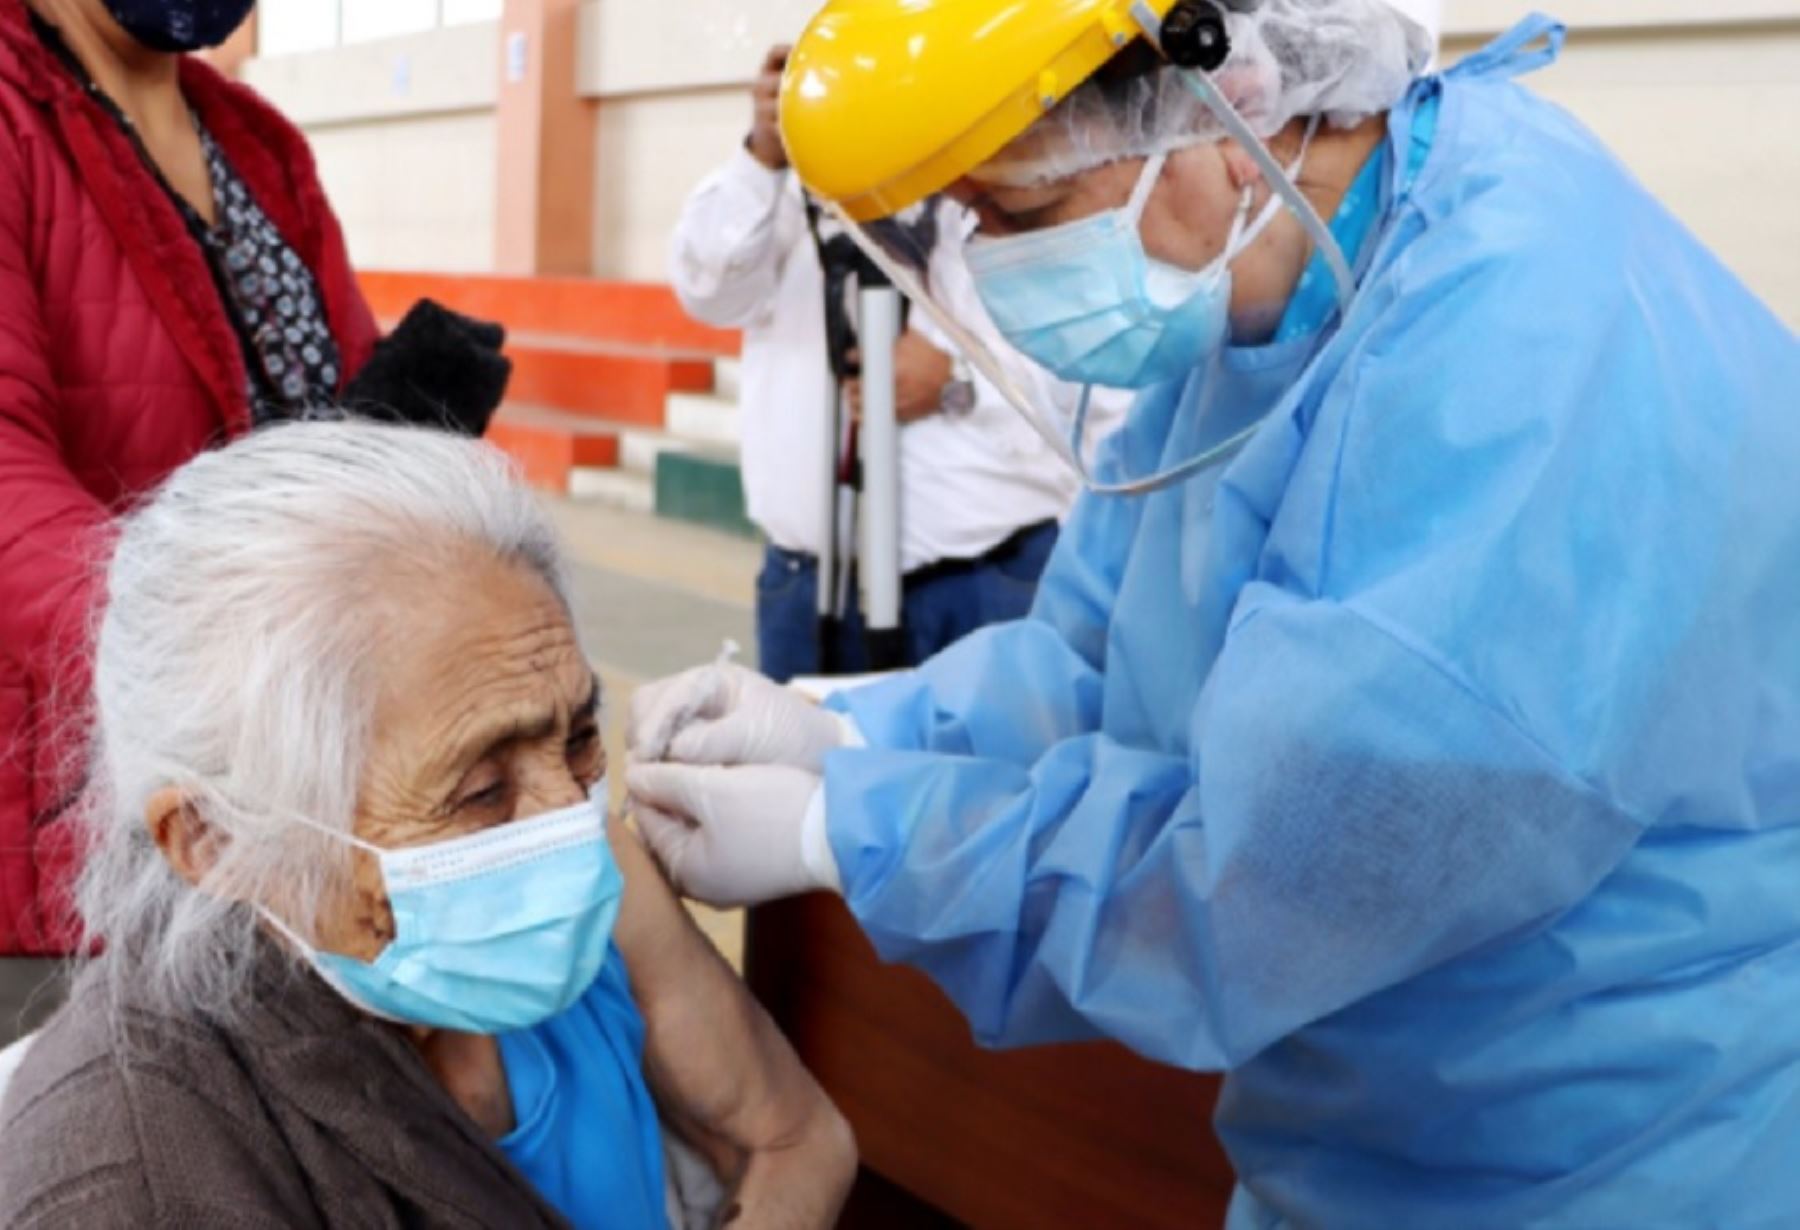 La Dirección Regional de Salud (Diresa) de Cajamarca inició la vacunación a un total 1,170 adultos mayores de 80 años afiliados al Seguro Integral de Salud (SIS), quienes reciben la primera dosis del laboratorio Pfizer contra el covid-19.